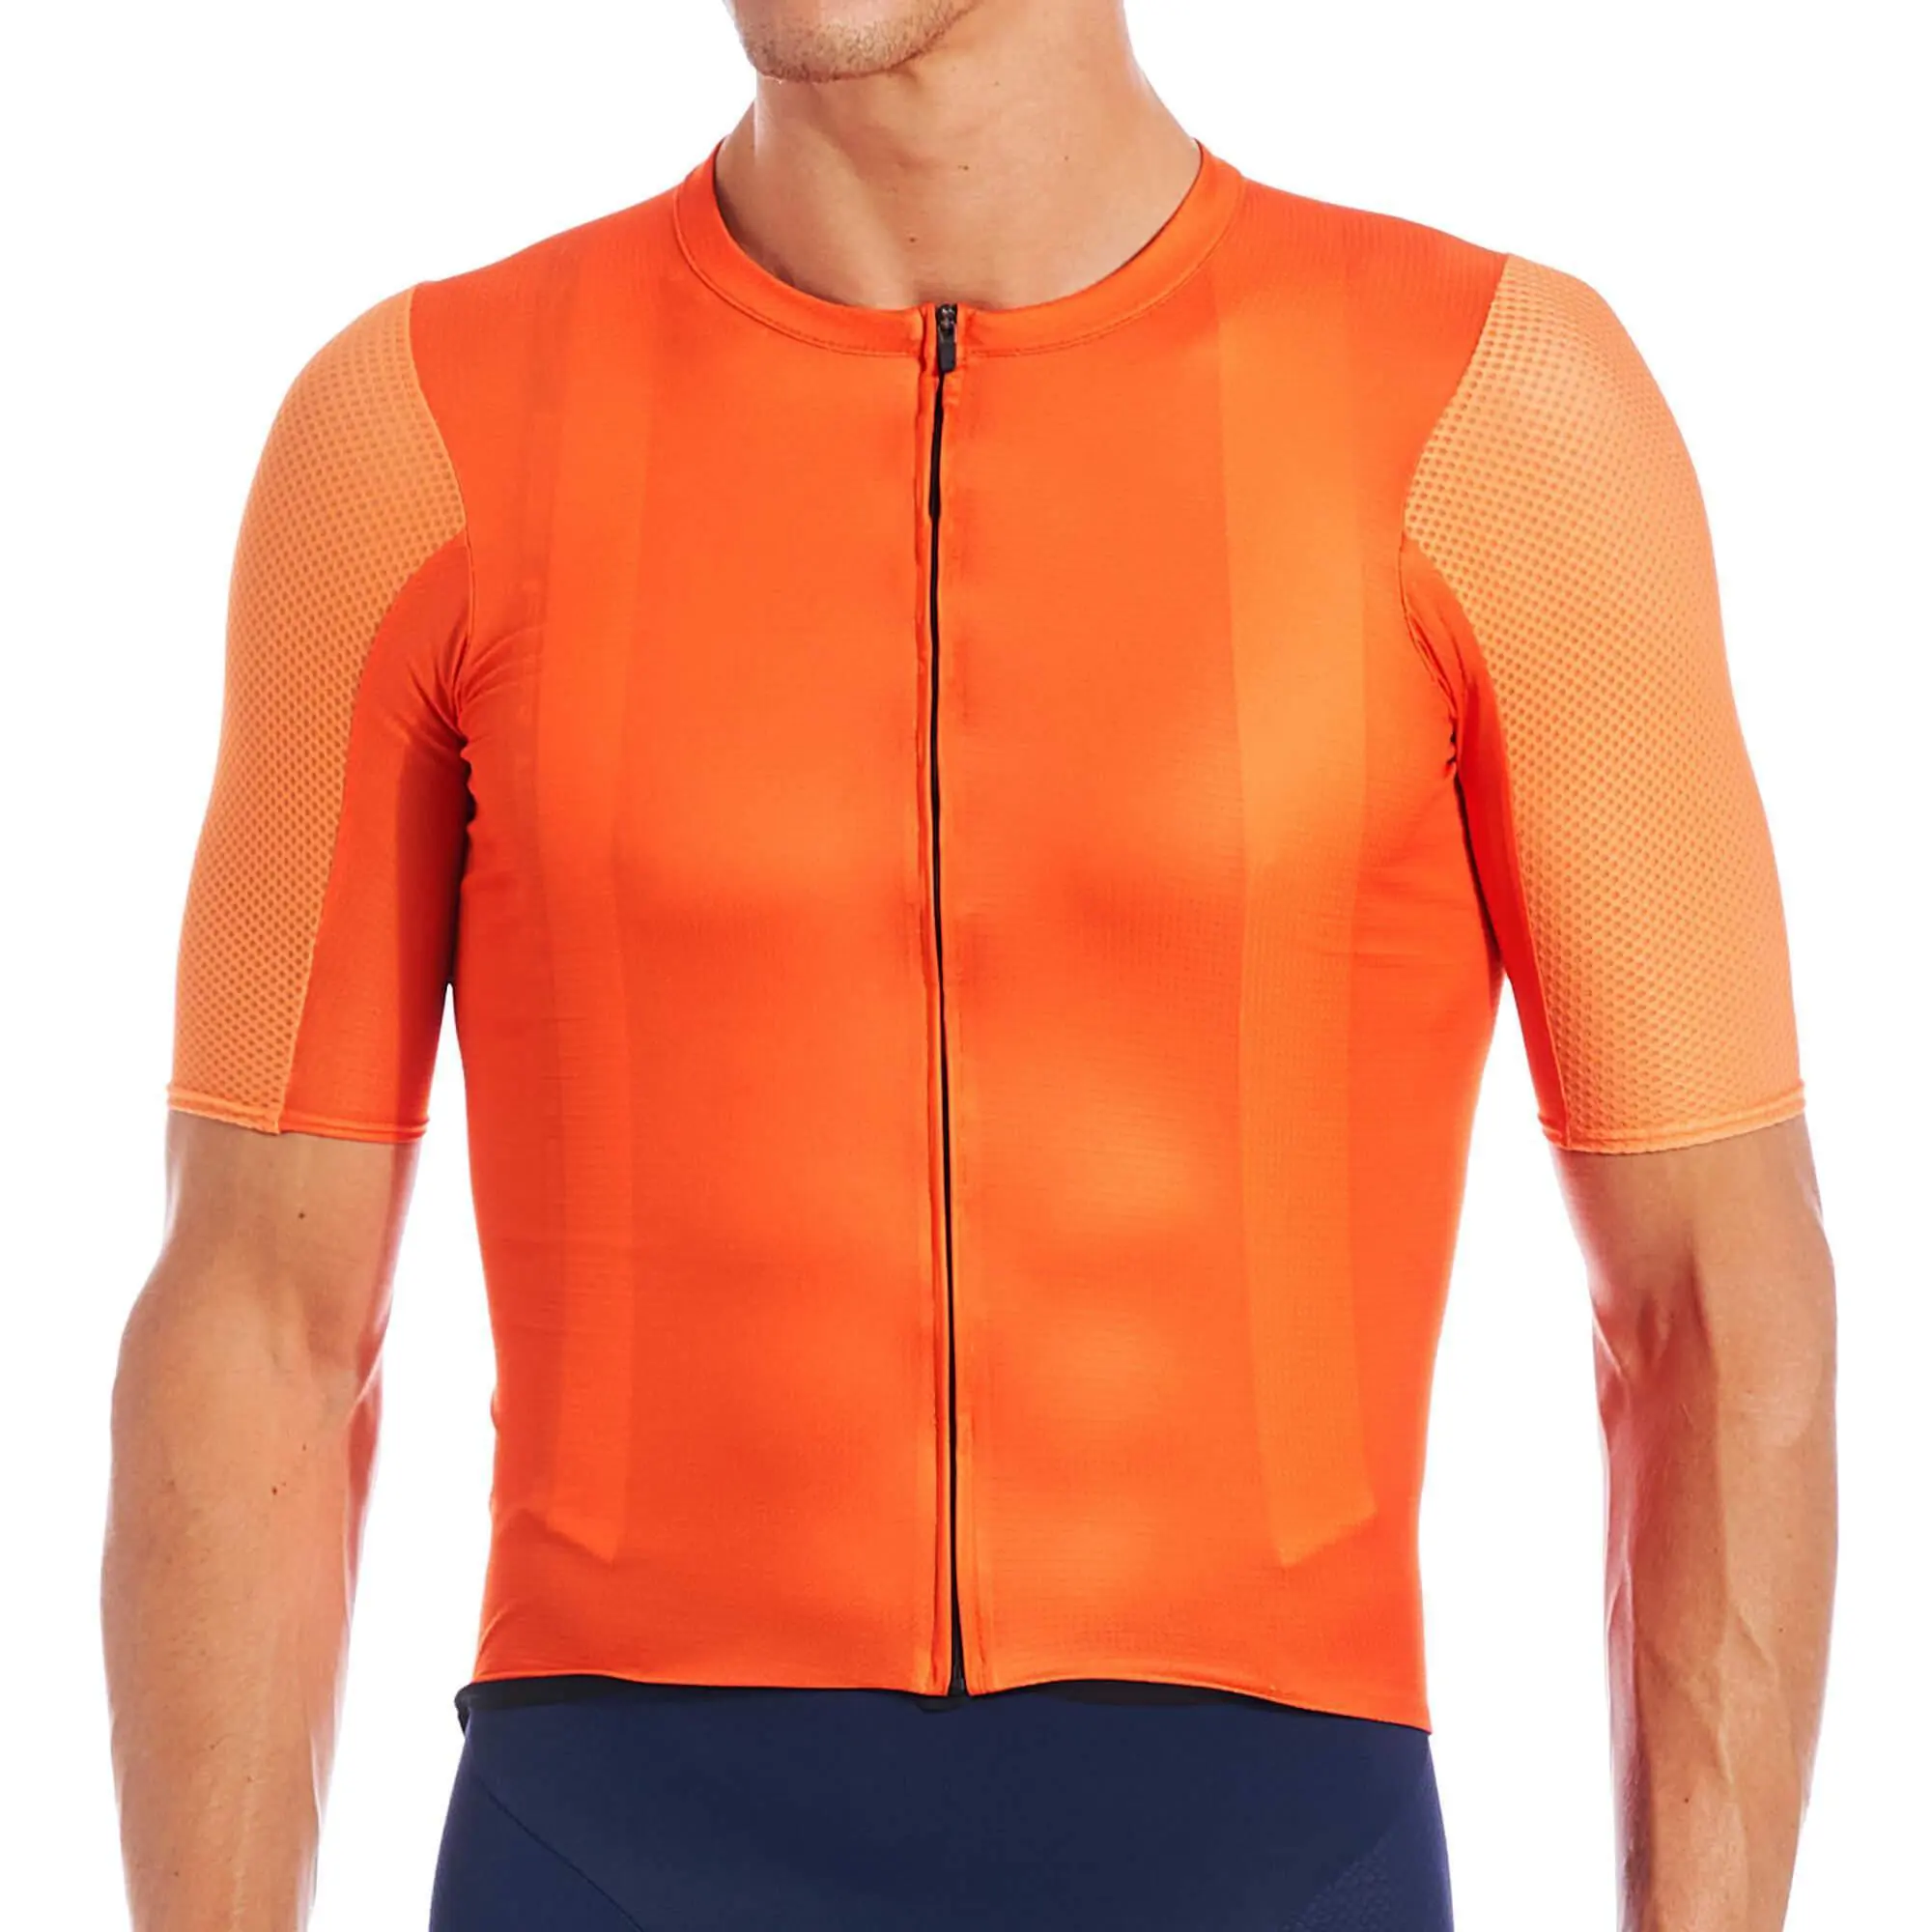 Vêtements de vélo PRO Team AERO, couleurs unies, taille européenne, tissu Spandex, manches courtes, Focus personnalisé, maillot de cyclisme pour garçons